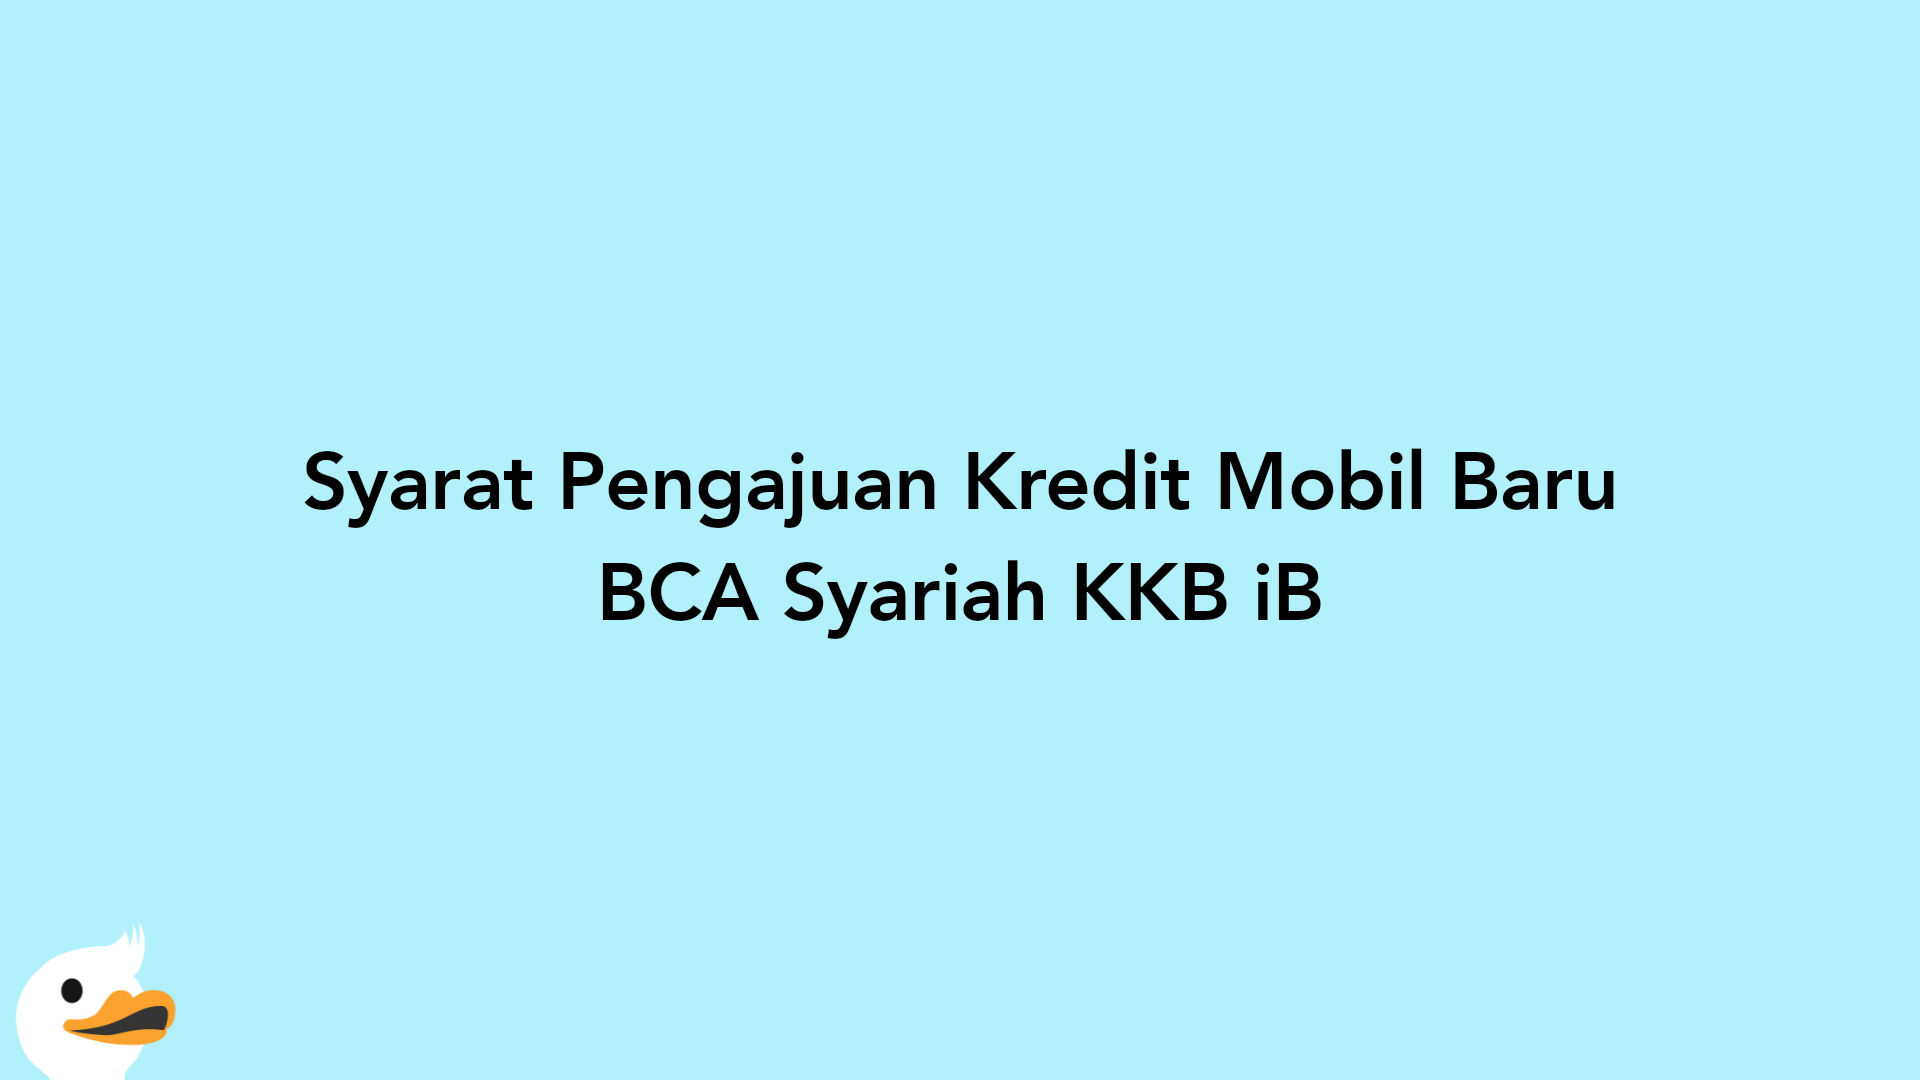 Syarat Pengajuan Kredit Mobil Baru BCA Syariah KKB iB